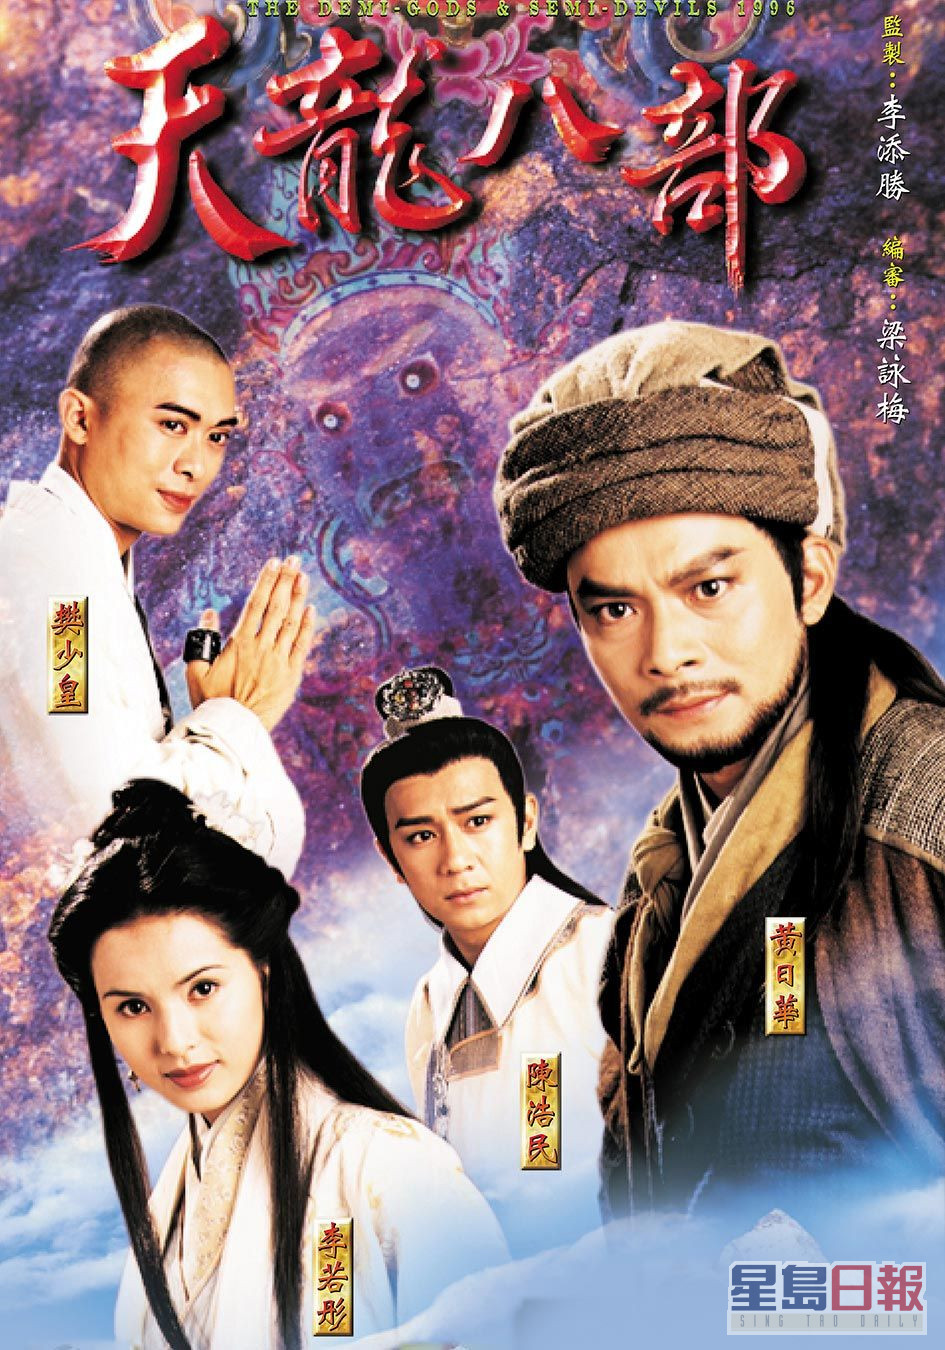 1997年TVB版本的剧集《天龙八部》是不少剧迷心目中的经典剧集之一。